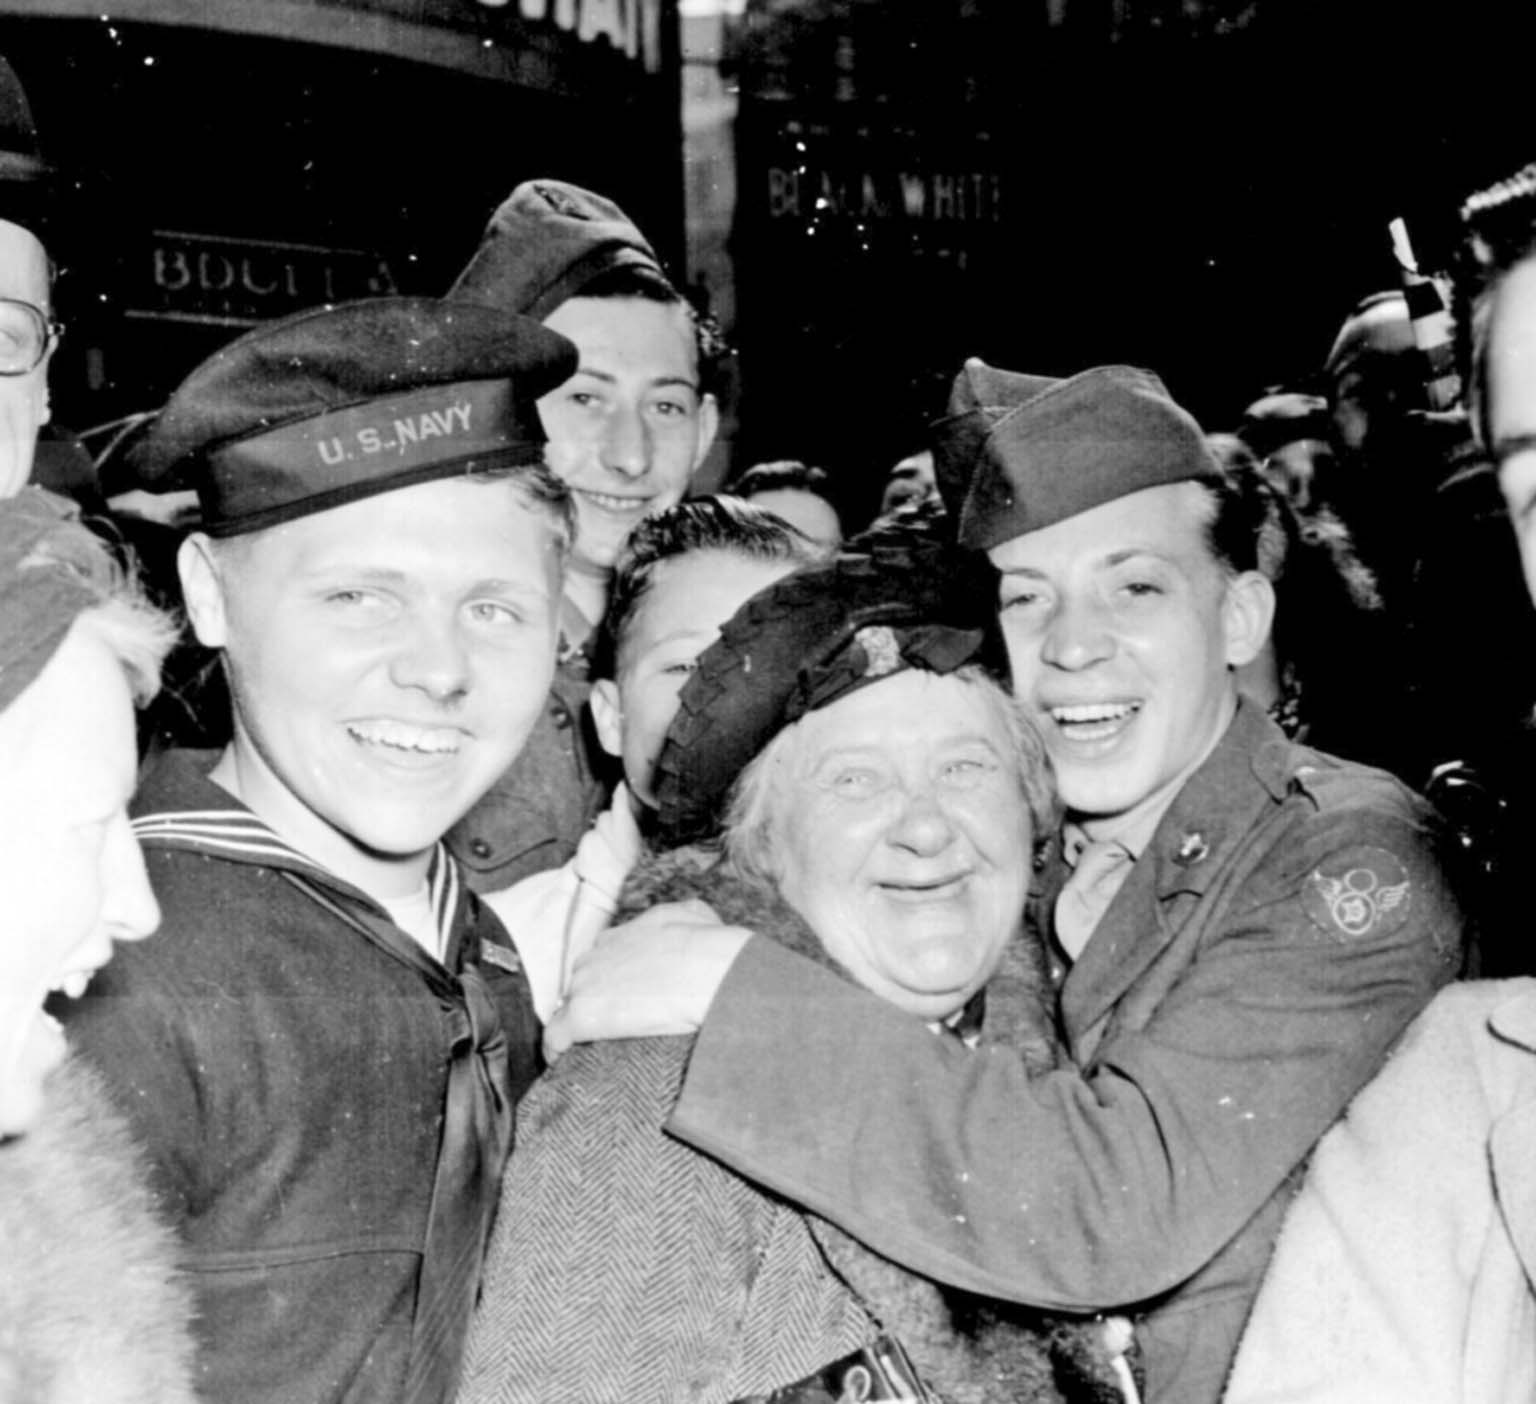 Понравилось на войне. Солдаты празднуют победу. Американский солдат 1945 года. Счастливые лица солдат. Солдаты радуются победе.